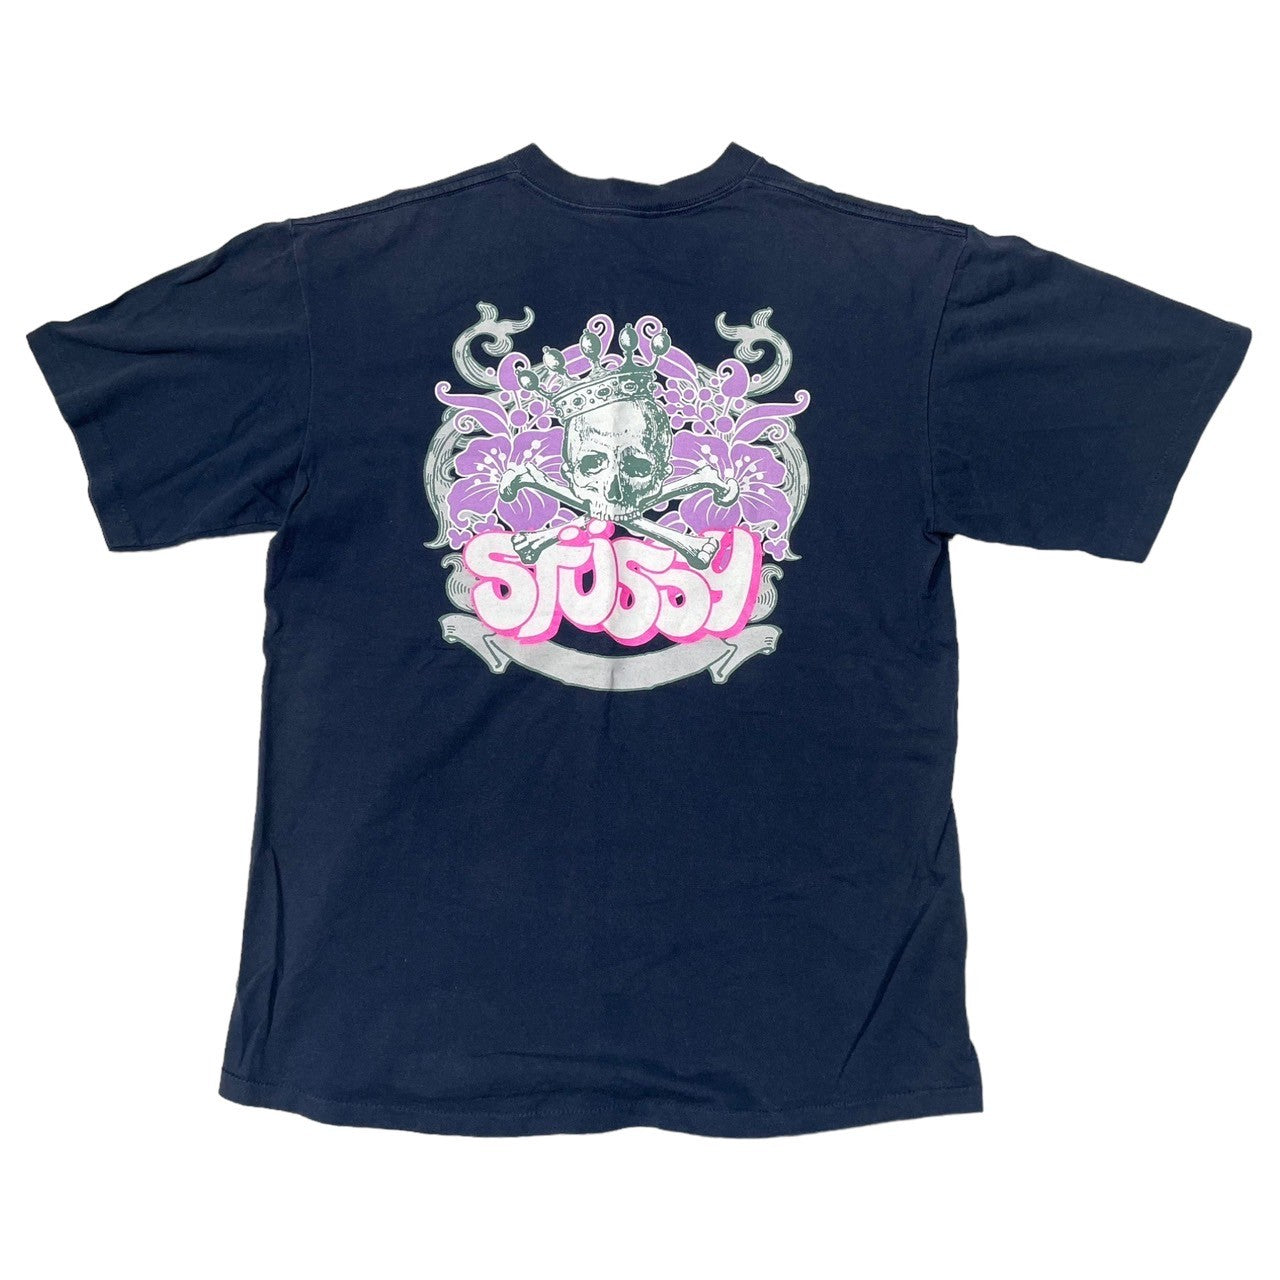 STUSSY(ステューシー) 90's~00's hibiscus crown skull ハイビスカス 王冠 スカル Tシャツ SIZE M  ネイビー×パープル×ピンク 90～00年代 OLD STUSSY